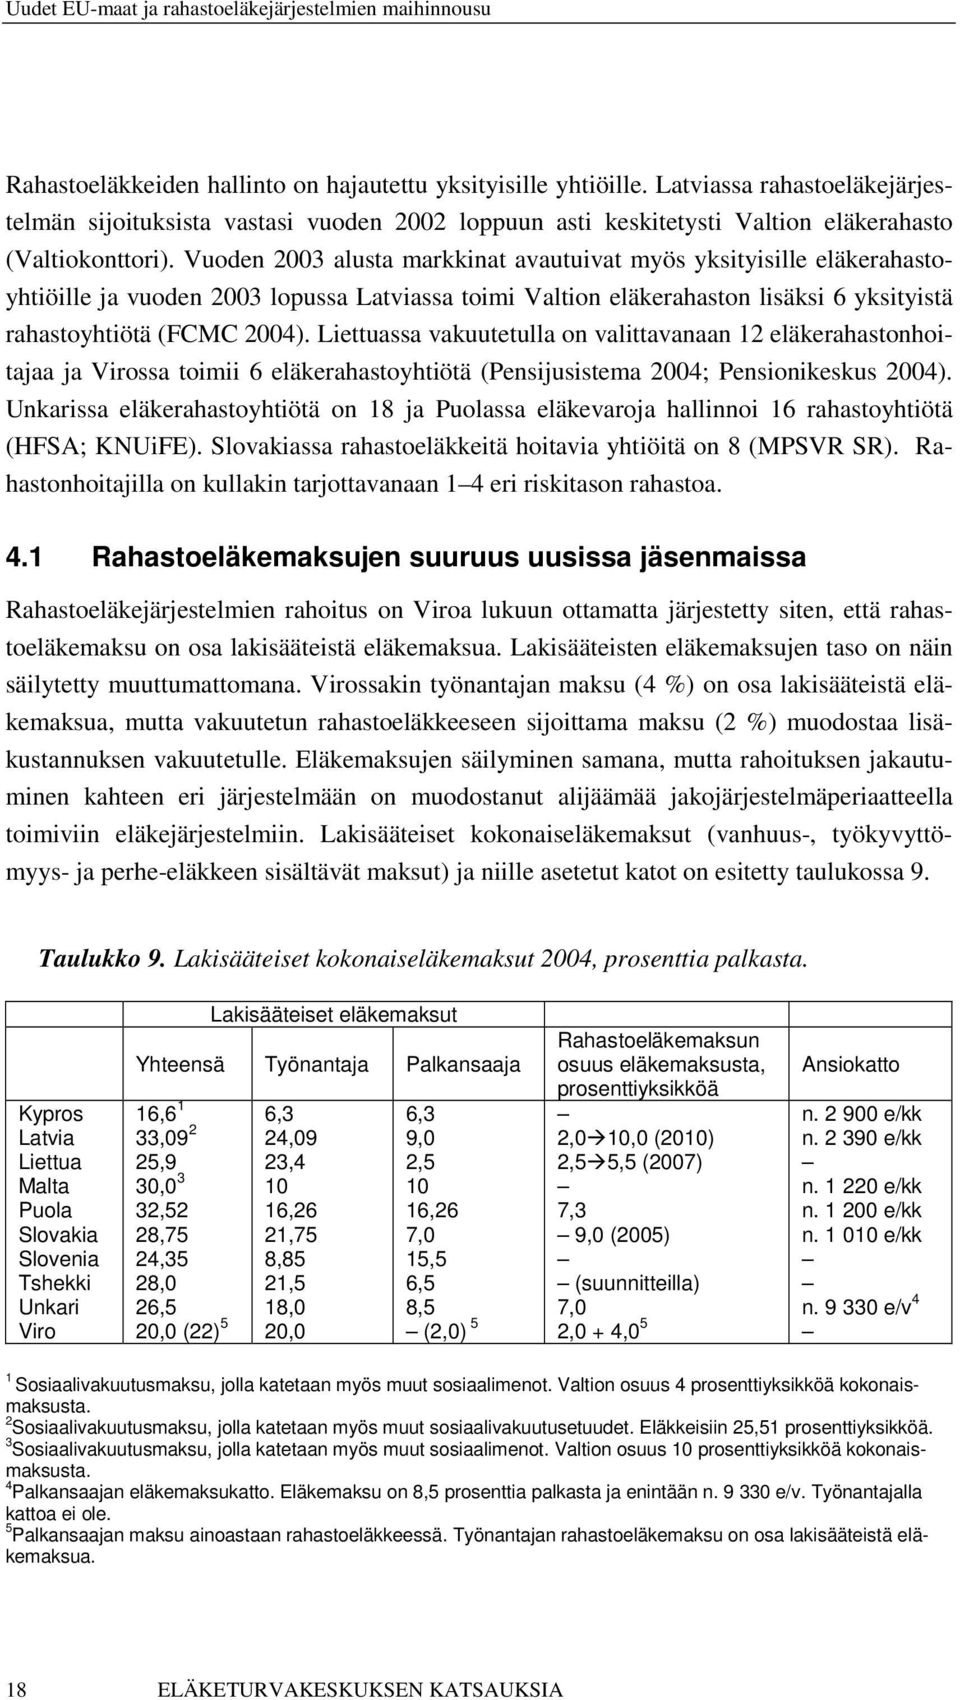 Liettuassa vakuutetulla on valittavanaan 12 eläkerahastonhoitajaa ja Virossa toimii 6 eläkerahastoyhtiötä (Pensijusistema 2004; Pensionikeskus 2004).